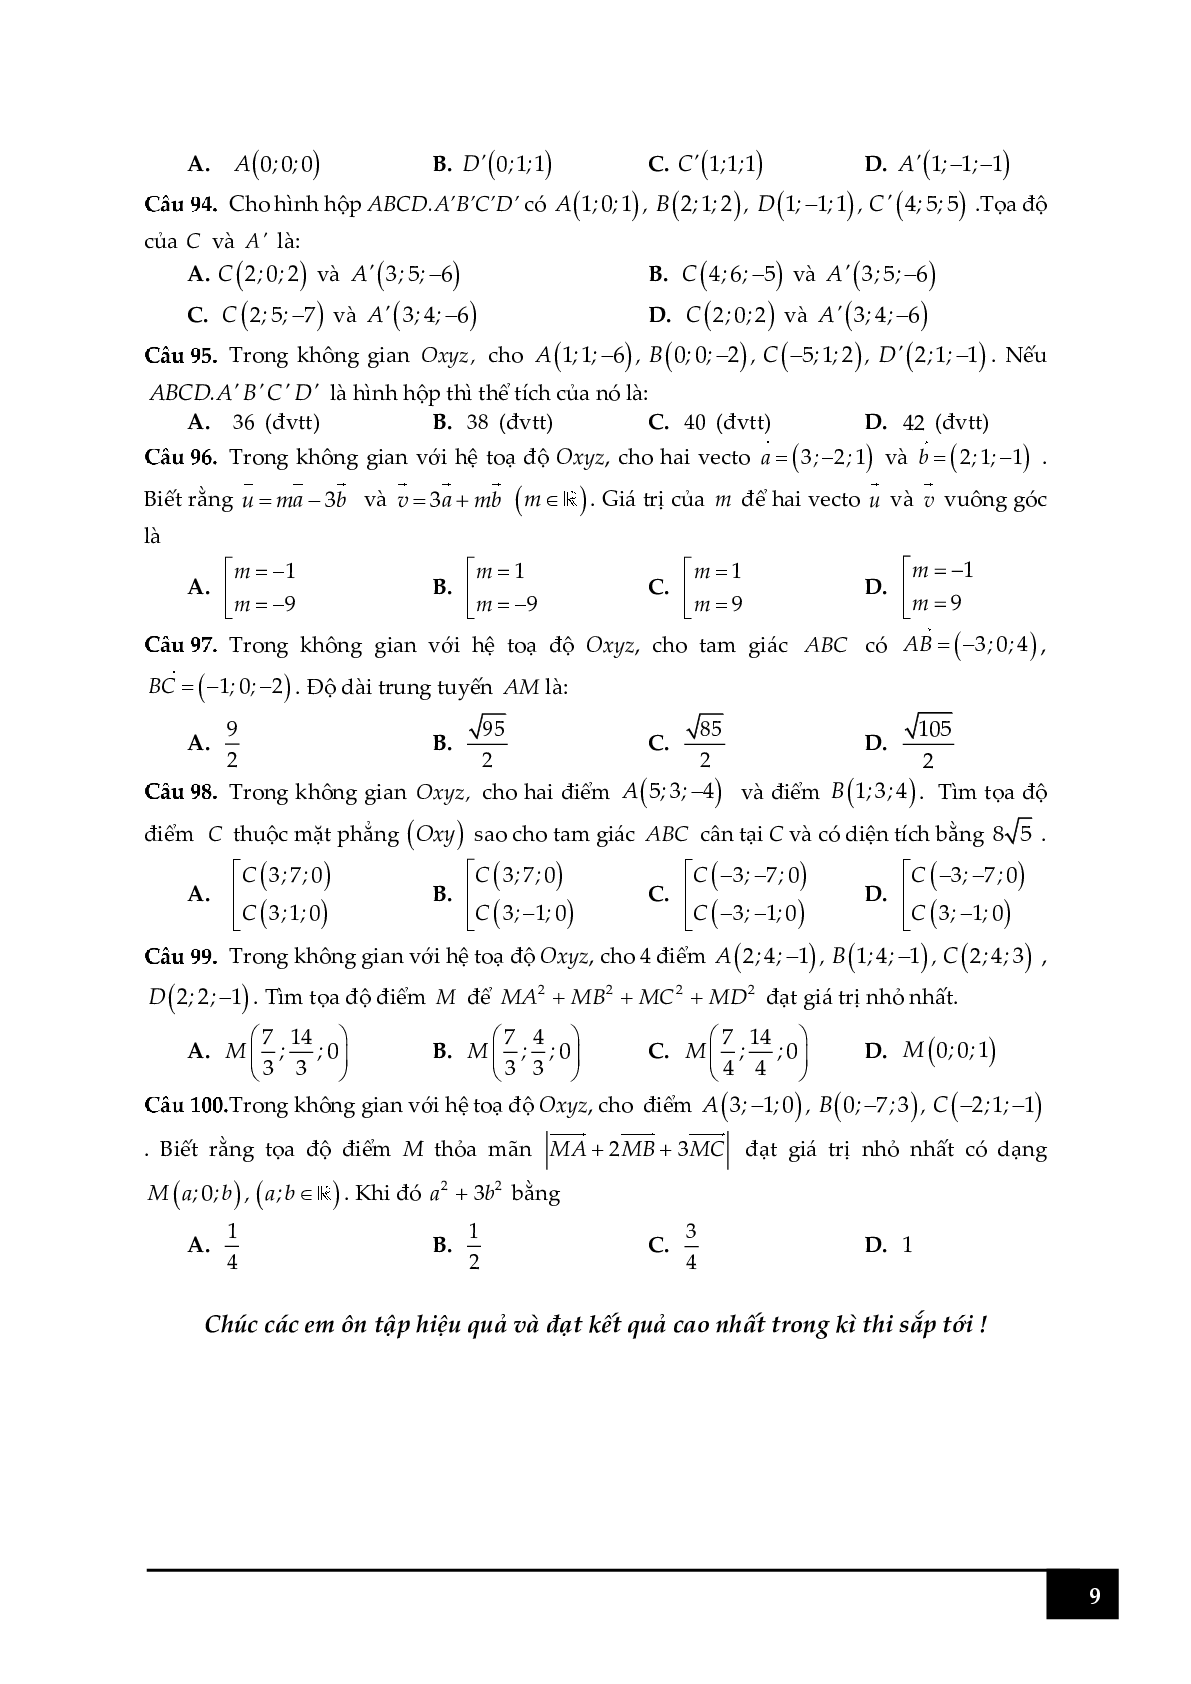 100 câu hỏi trắc nghiệm về tọa độ điểm trong Oxyz (trang 9)